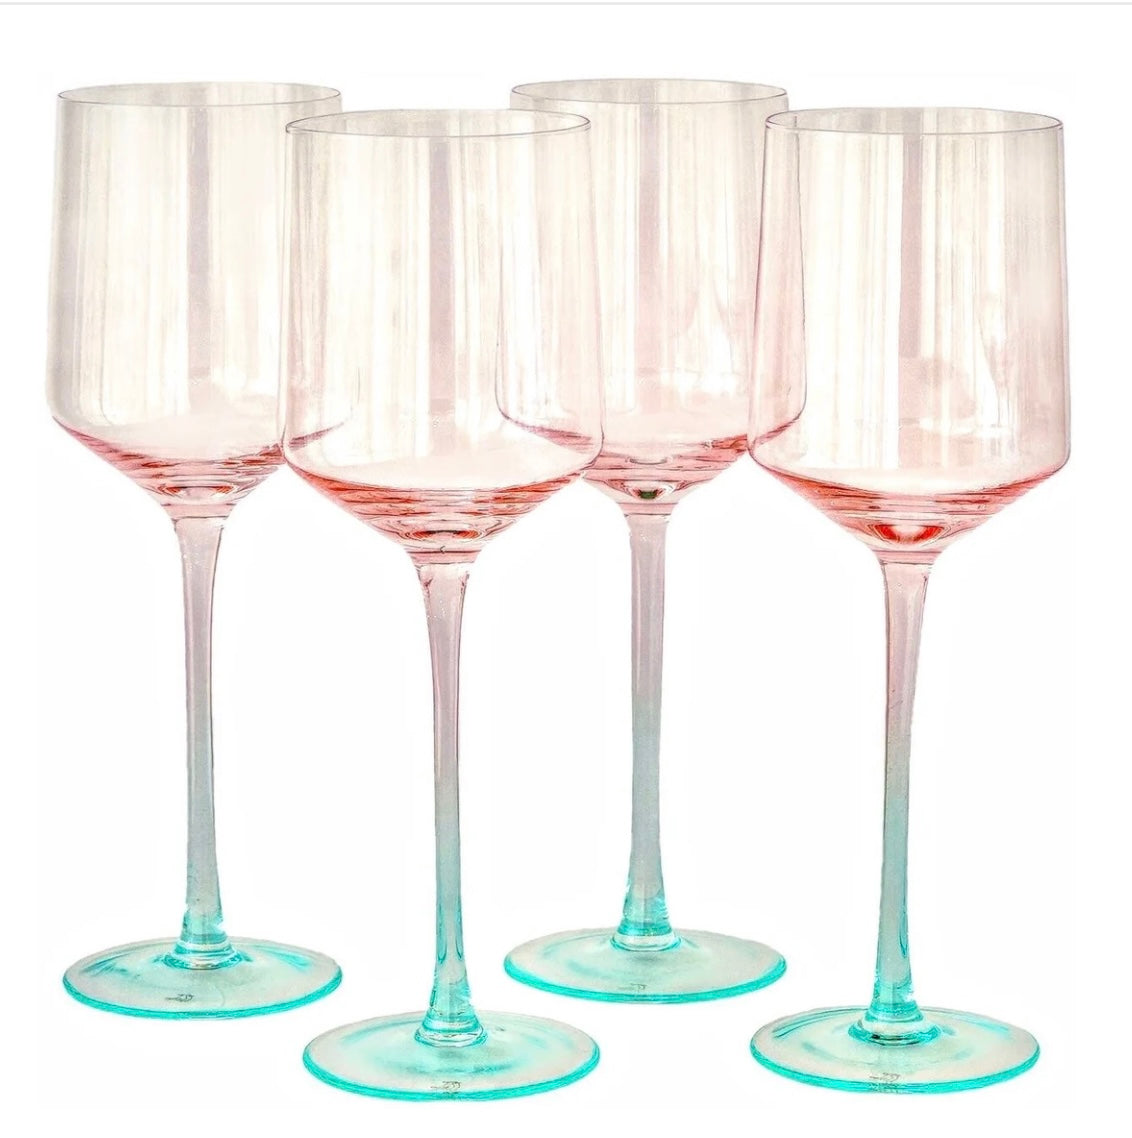 Byrdeen Wine glasses